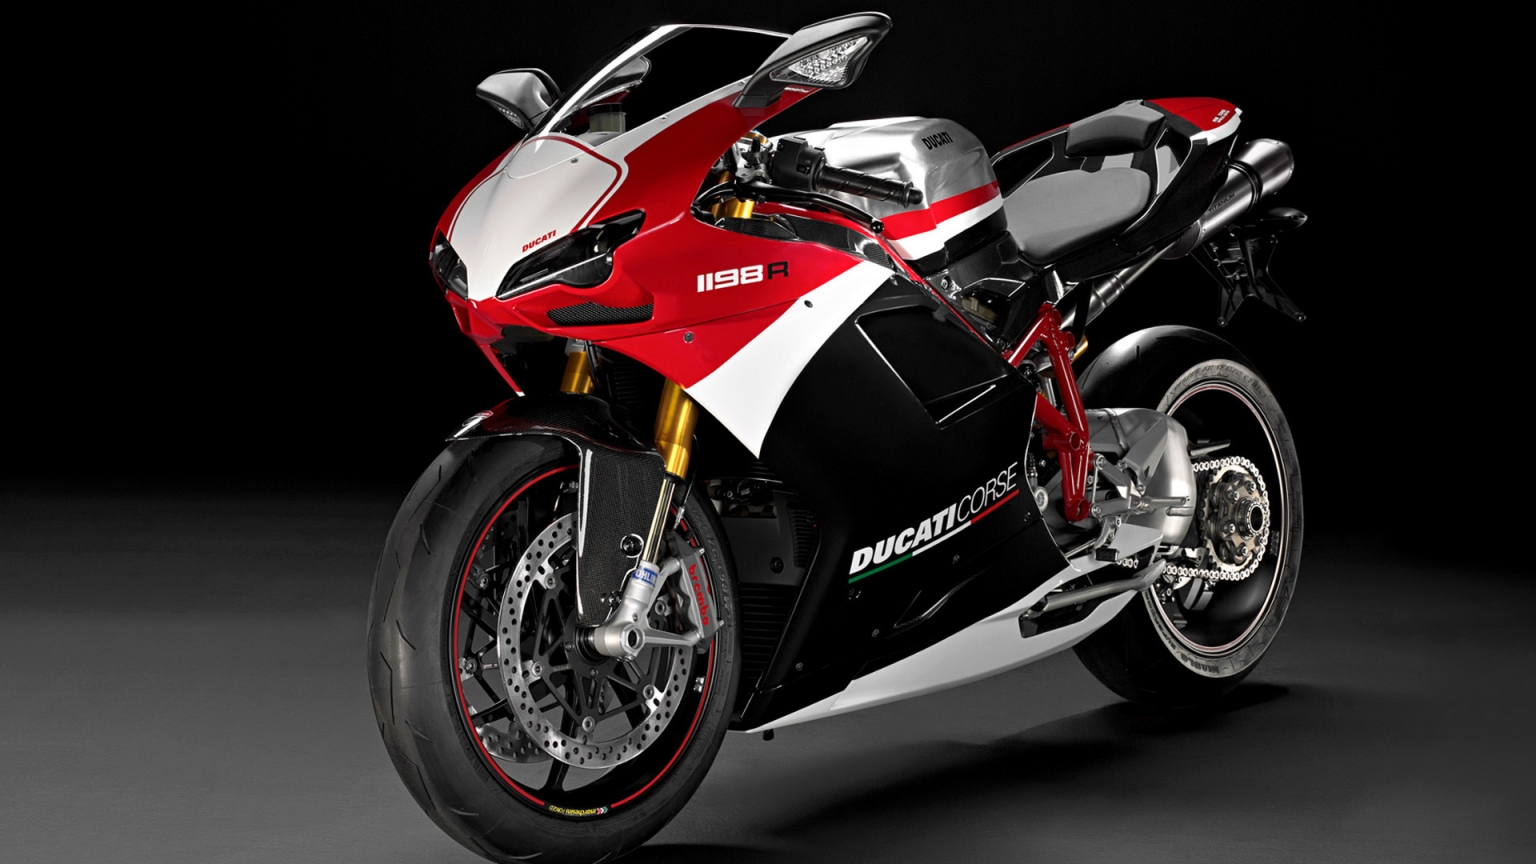 Ducati Superbike-1198-R-Corse for 1536 x 864 HDTV resolution